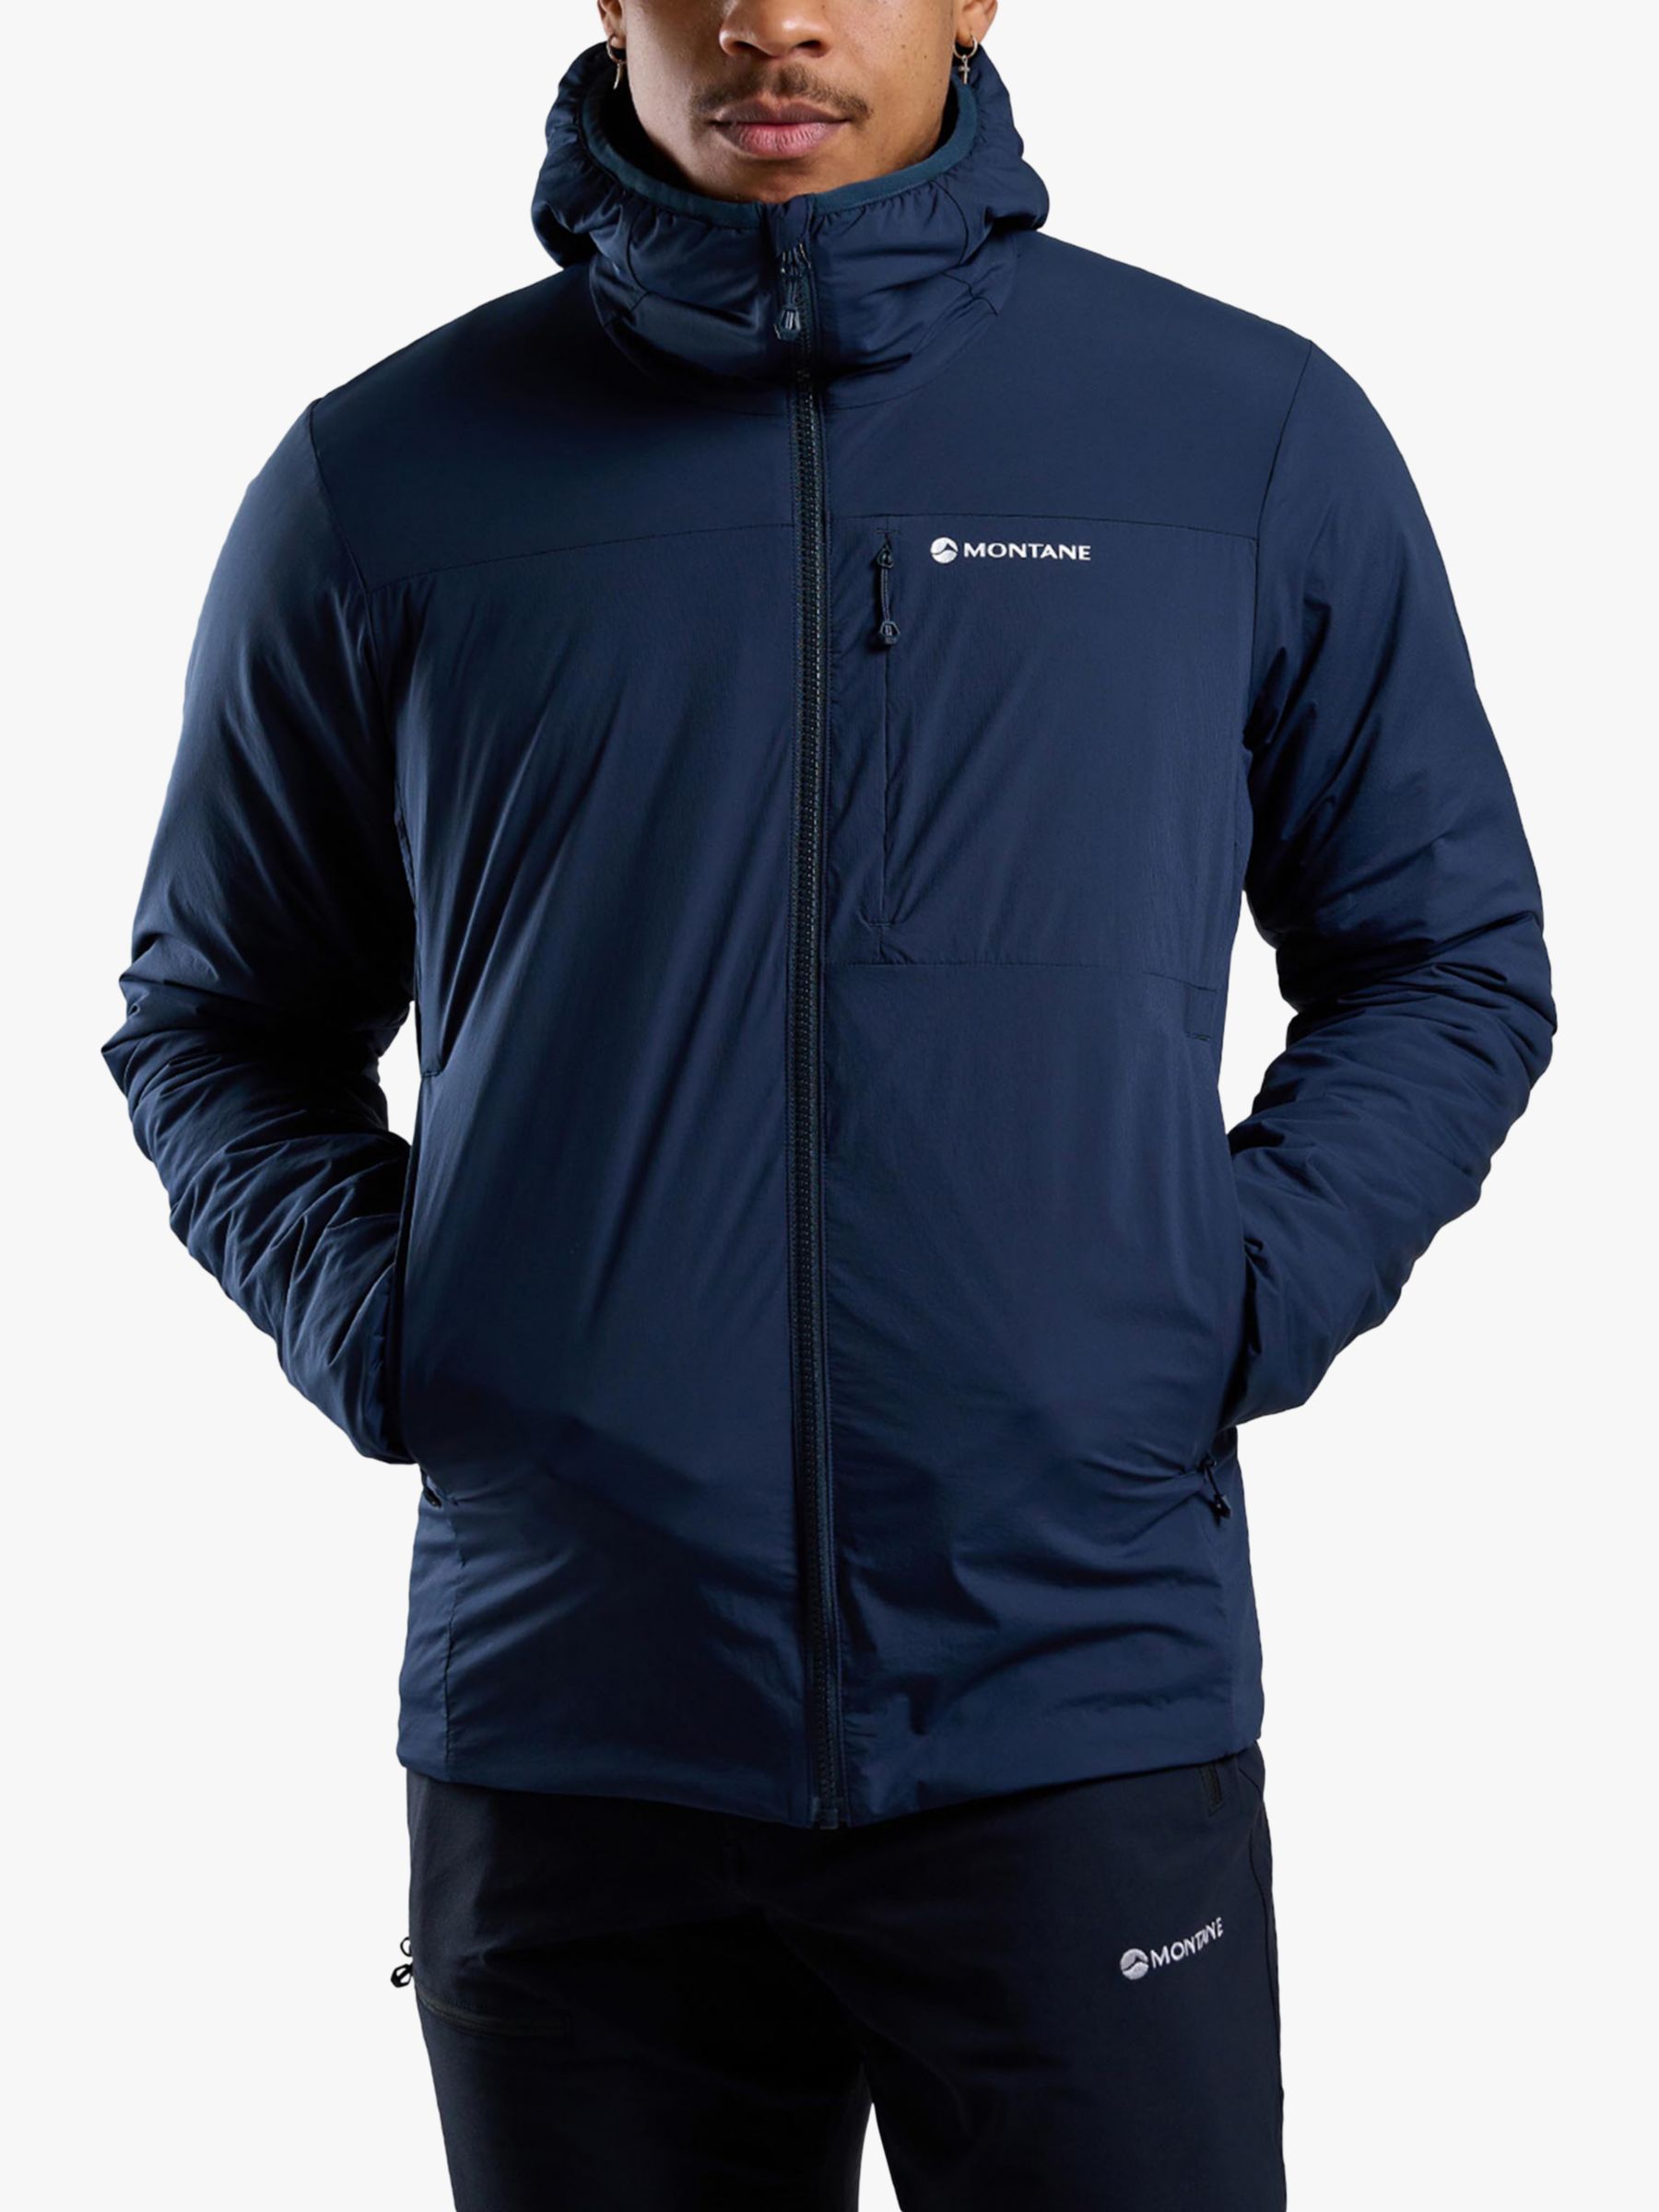 Мужская утепленная водоотталкивающая куртка Fireball Montane, затмение синий куртка утепленная мужская demix синий